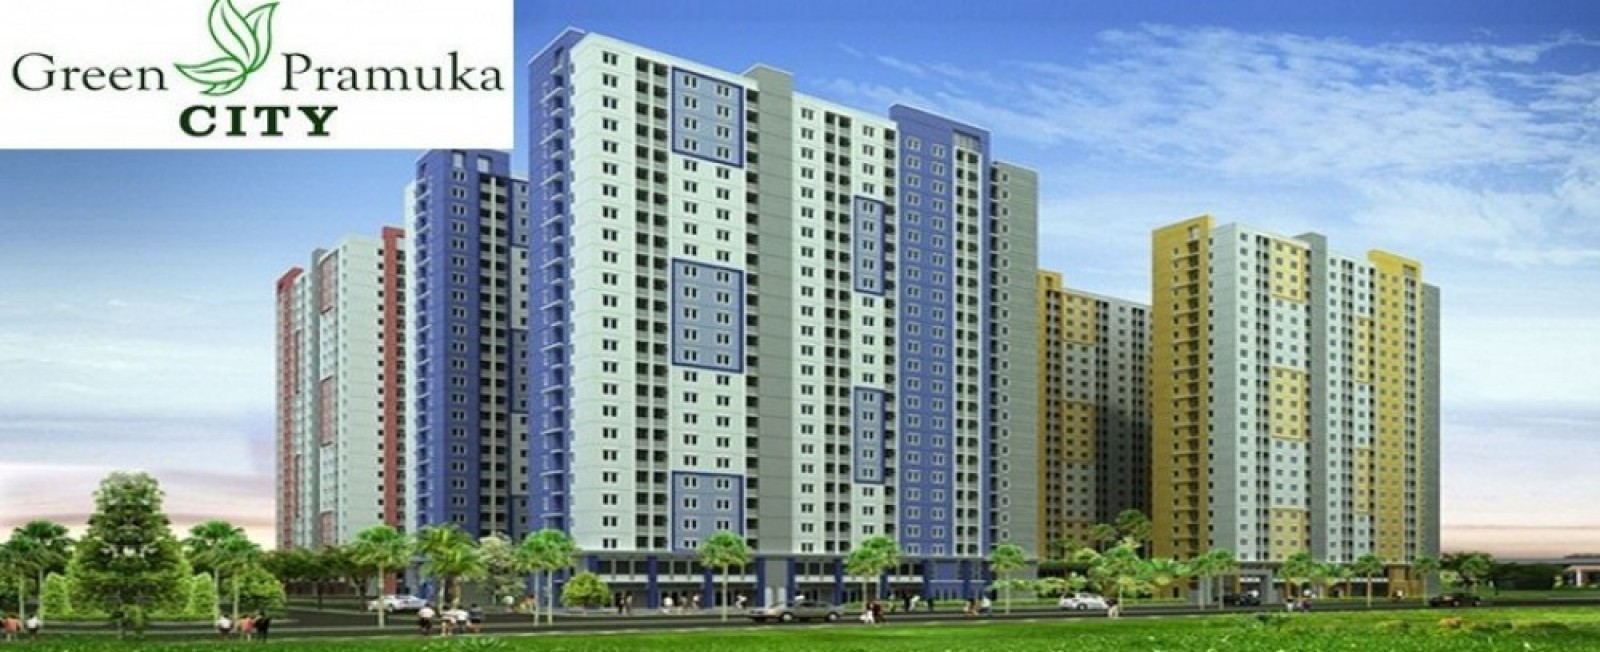 cropped-cropped-cropped-apartemen-murah-jakarta-pusat-green-pramuka-city1.jpg